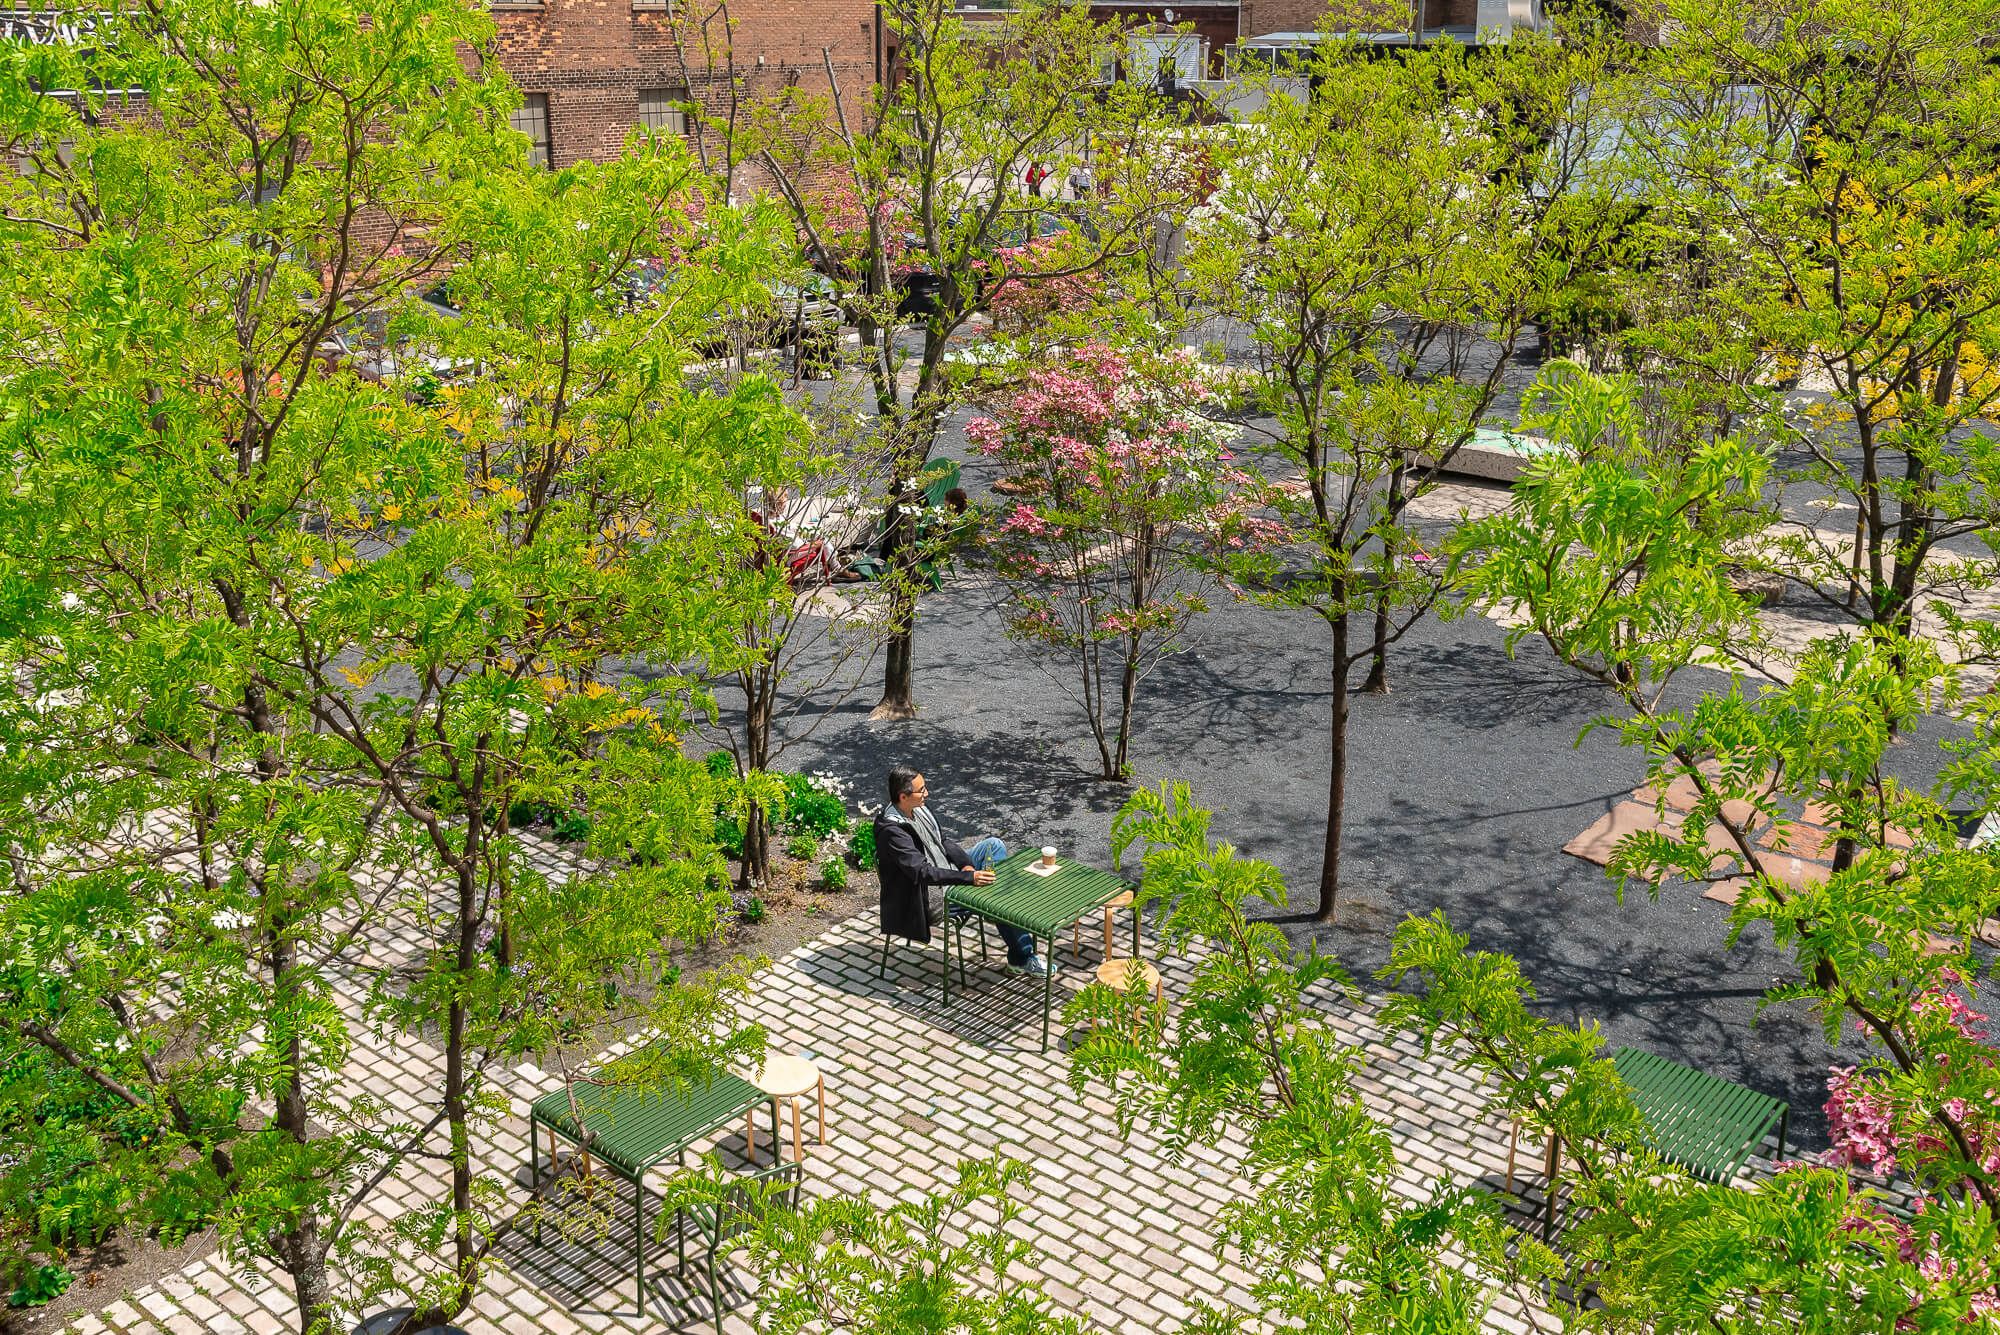 a man sit in leafy urban green space